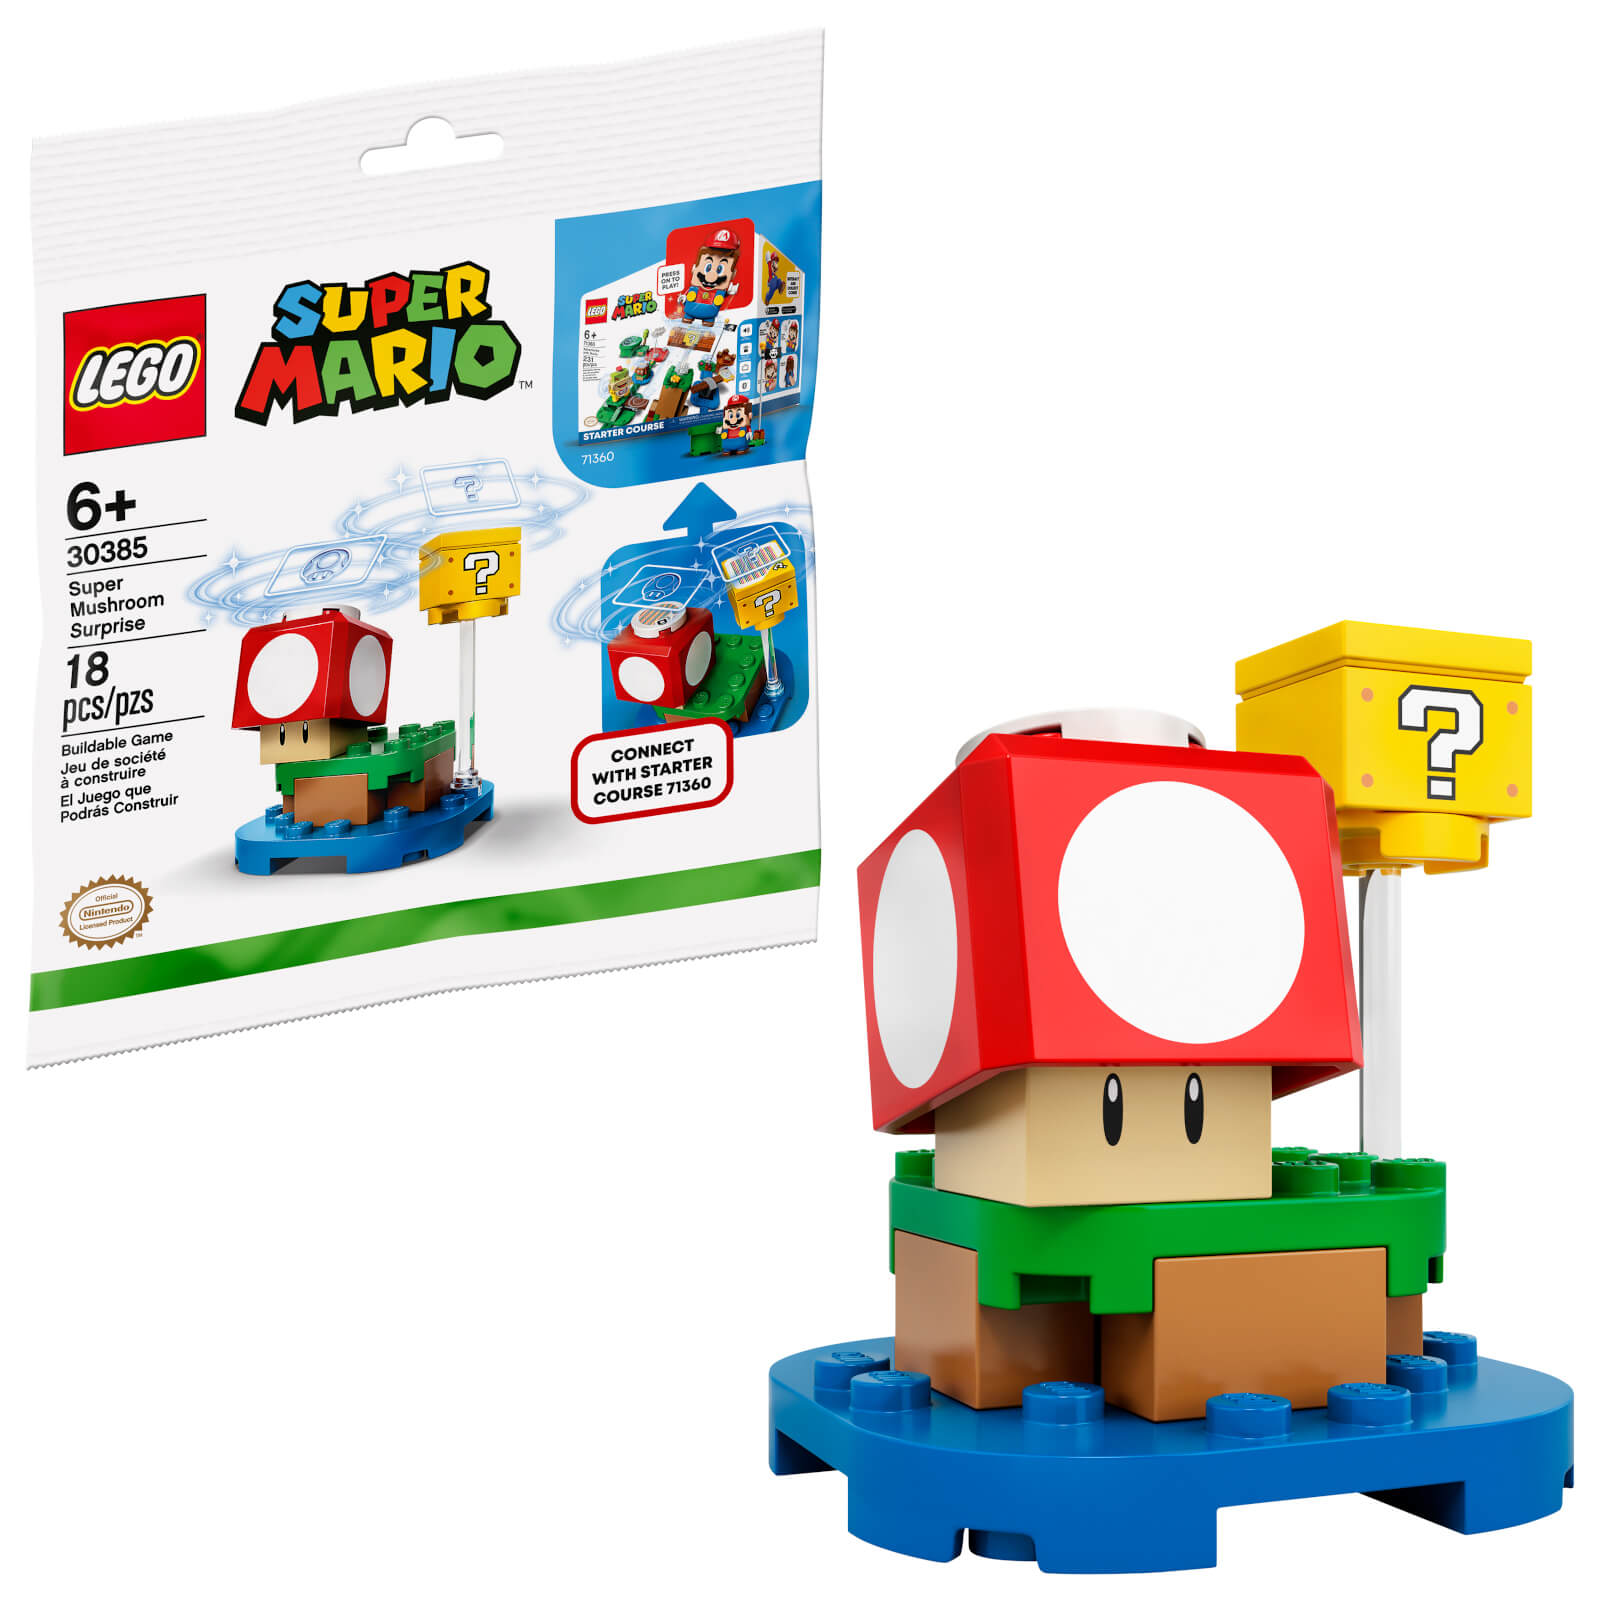 Super Mushroom Surprise - LEGO Super Mario Polybag Set (30385)